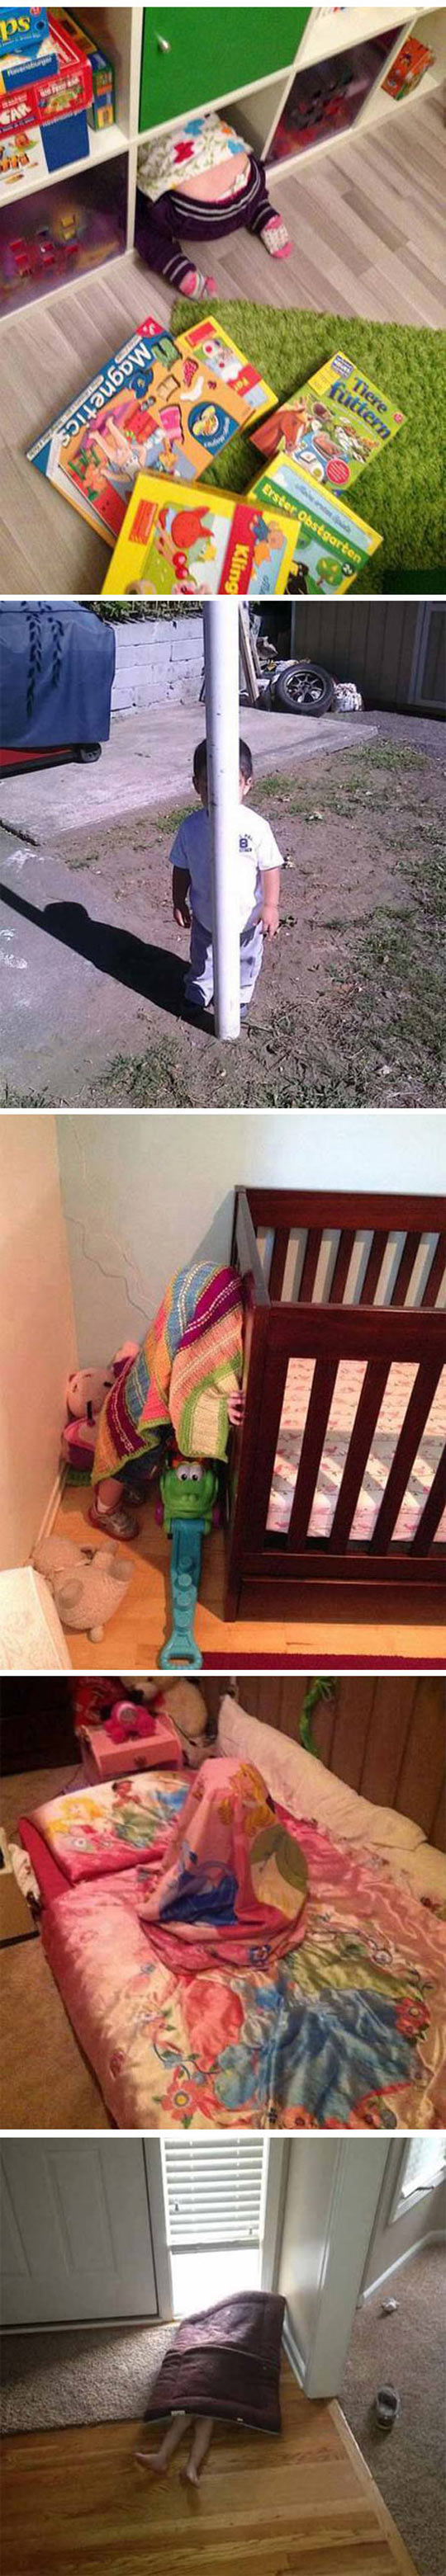 funny-kids-hide-seek-bad-places-bed